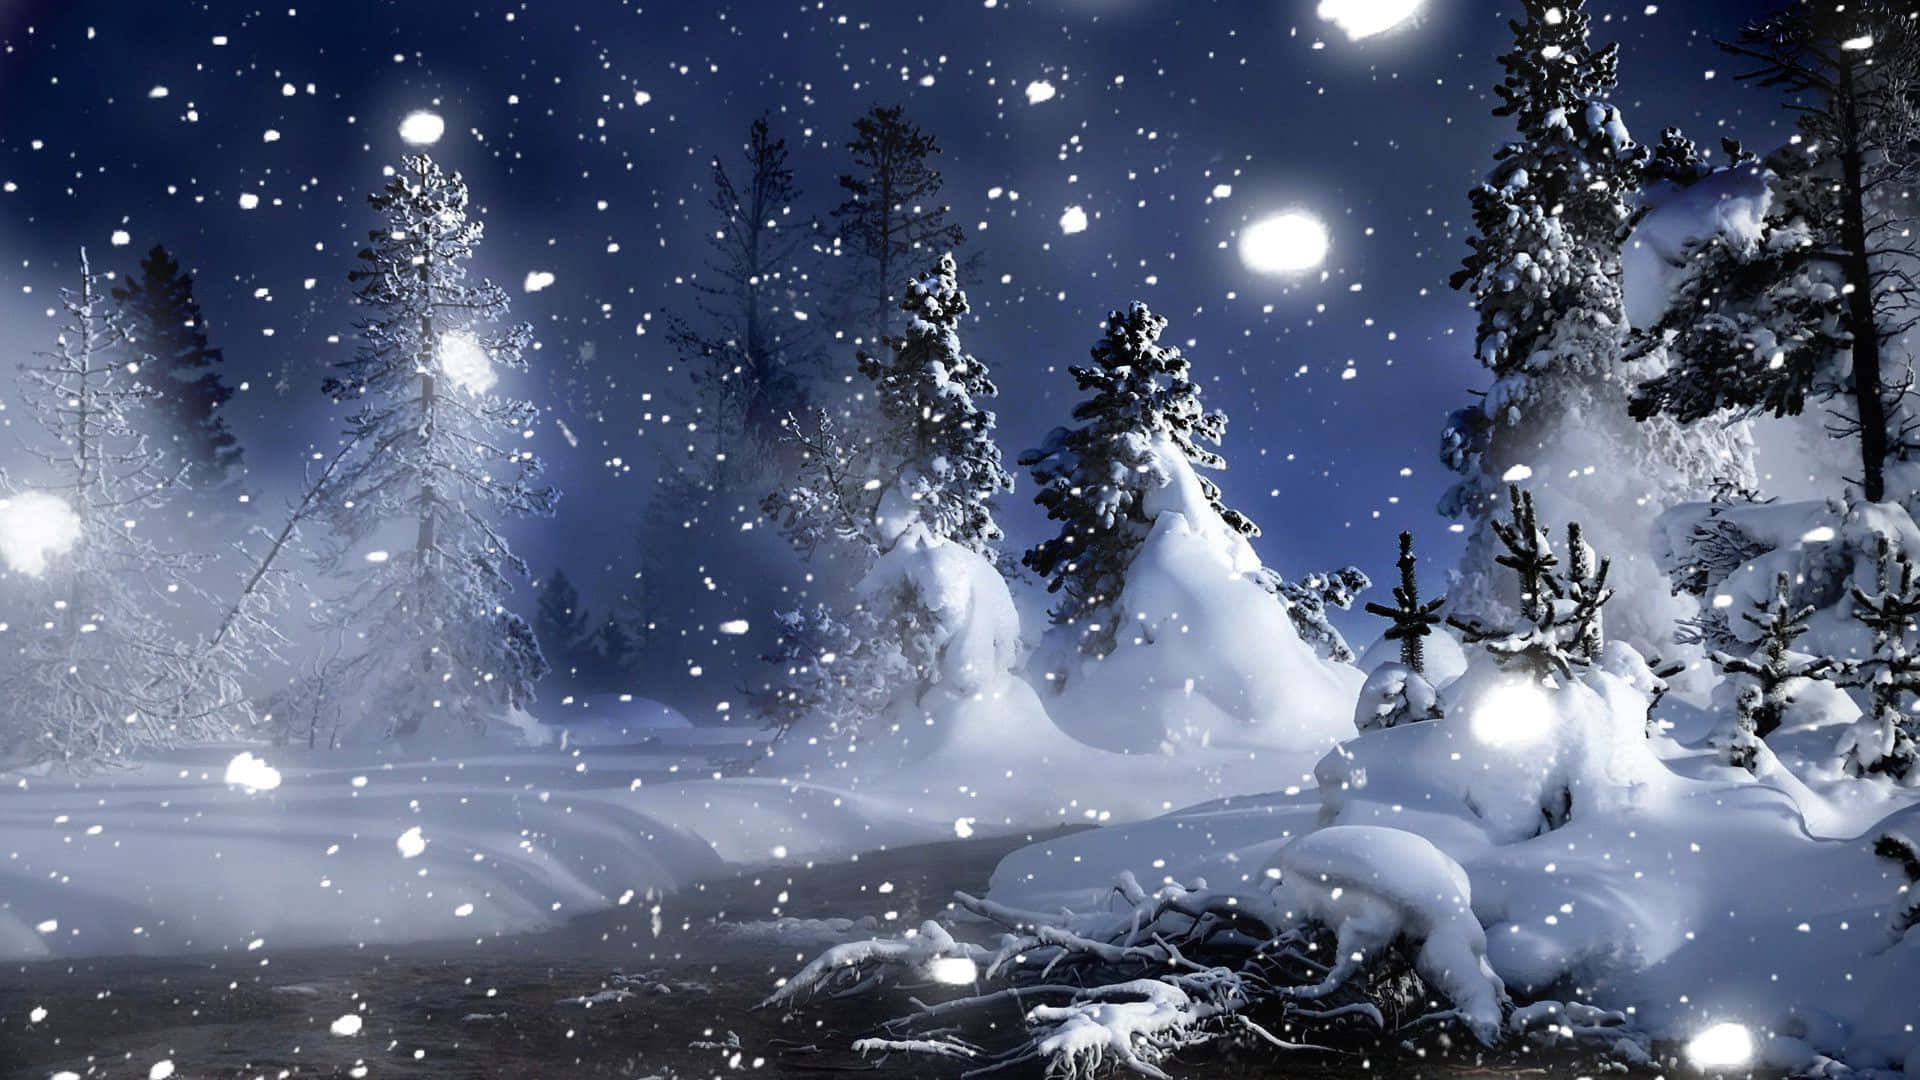 Snowy Night Winter Wonderland Background